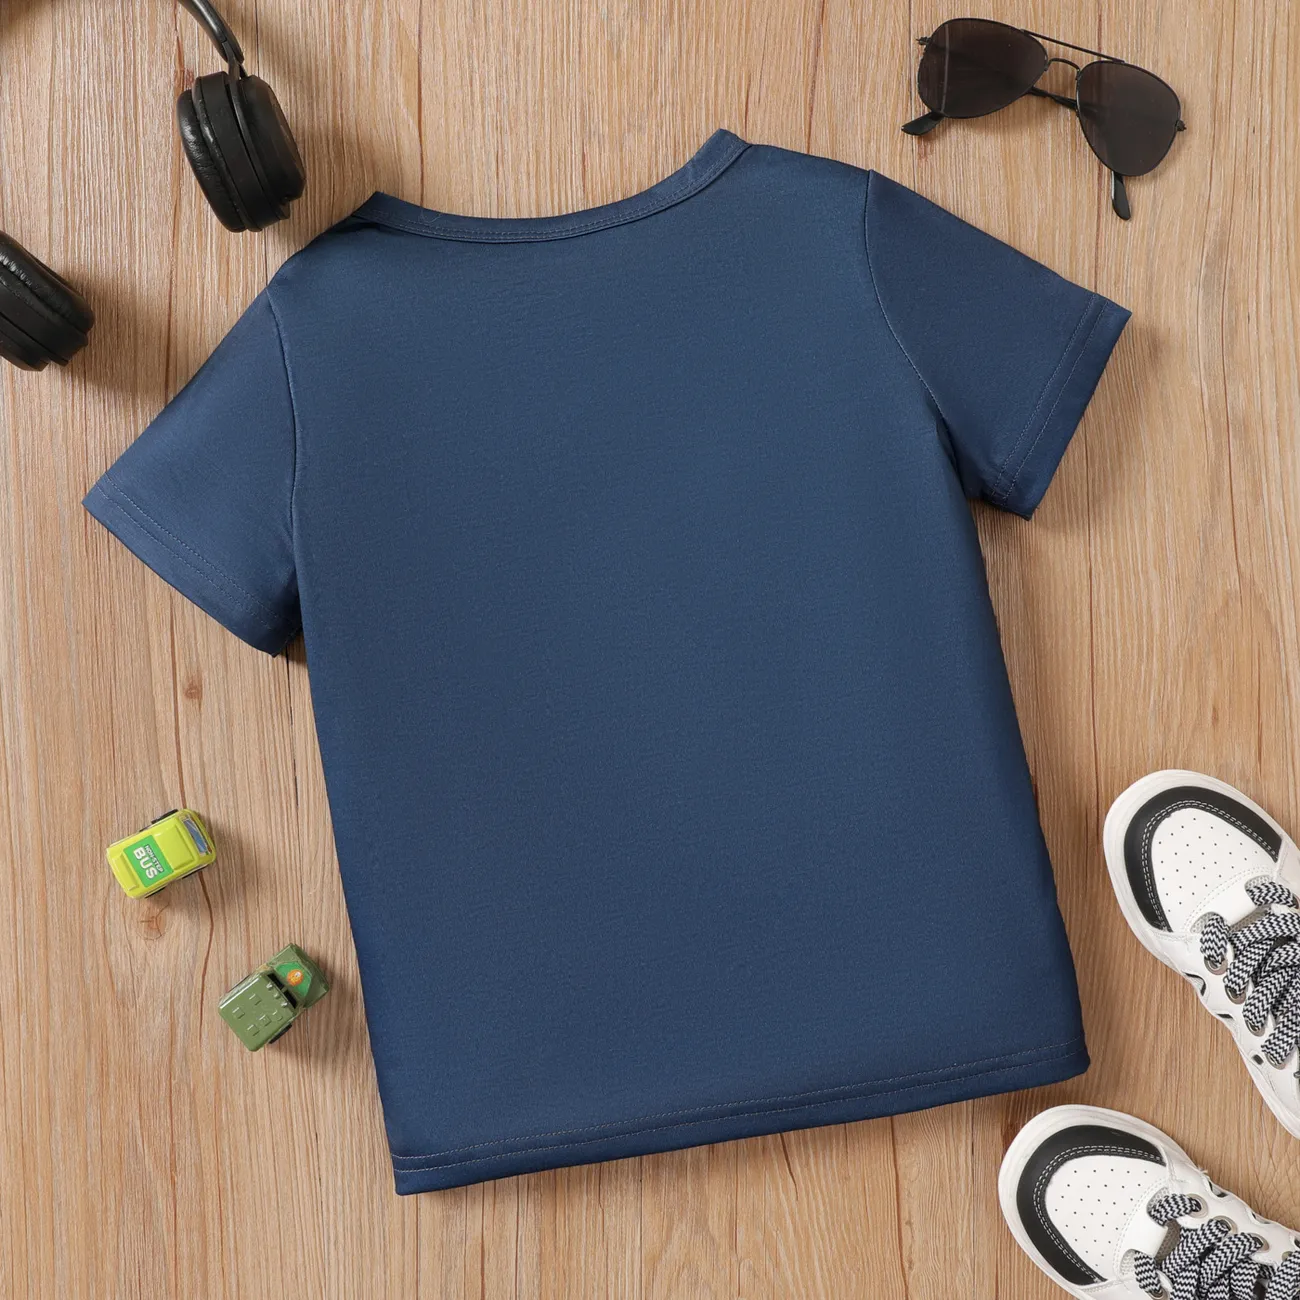 Enfants Garçon Véhicule Manches courtes T-Shirt Bleu Foncé big image 1